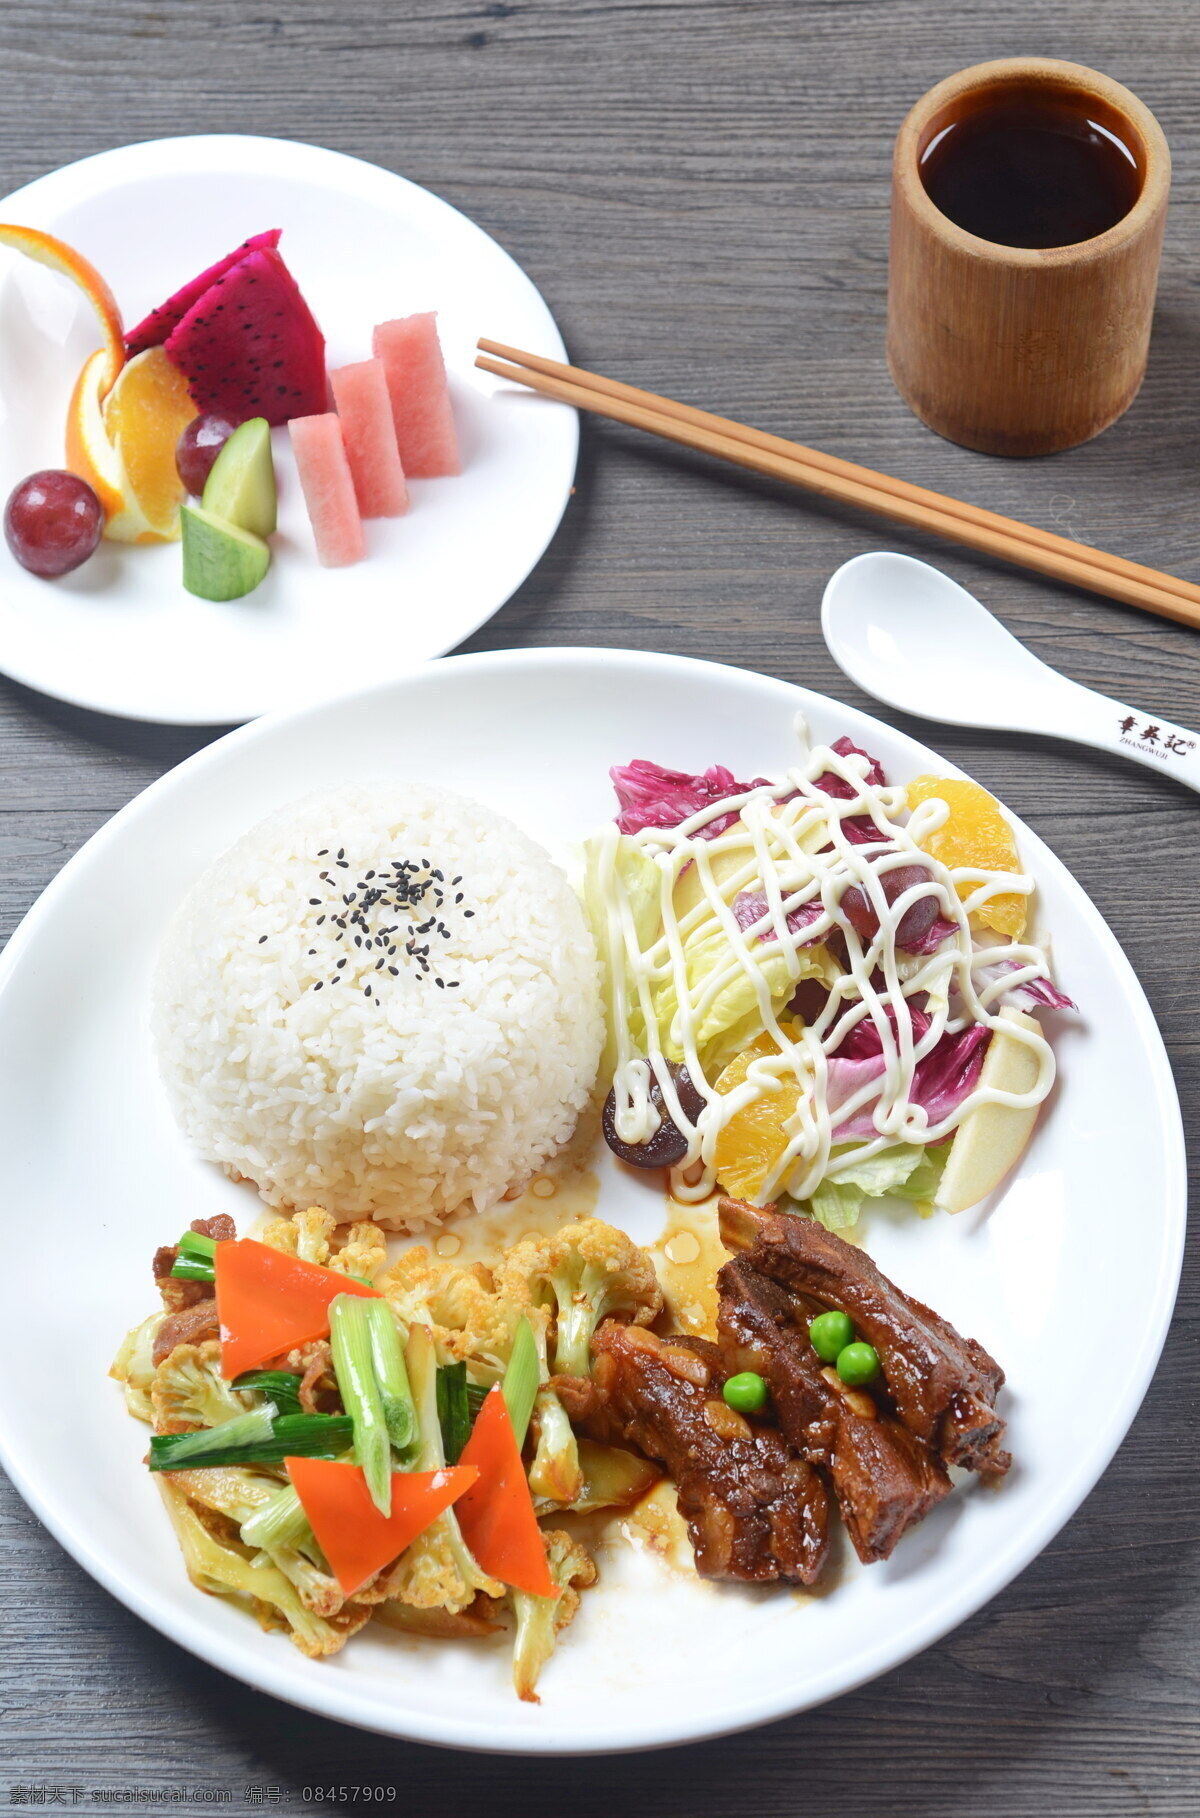 营养套餐饭 米饭套餐 营养美味 荤素搭配 水果 摄影图 高清 餐饮美食 传统美食